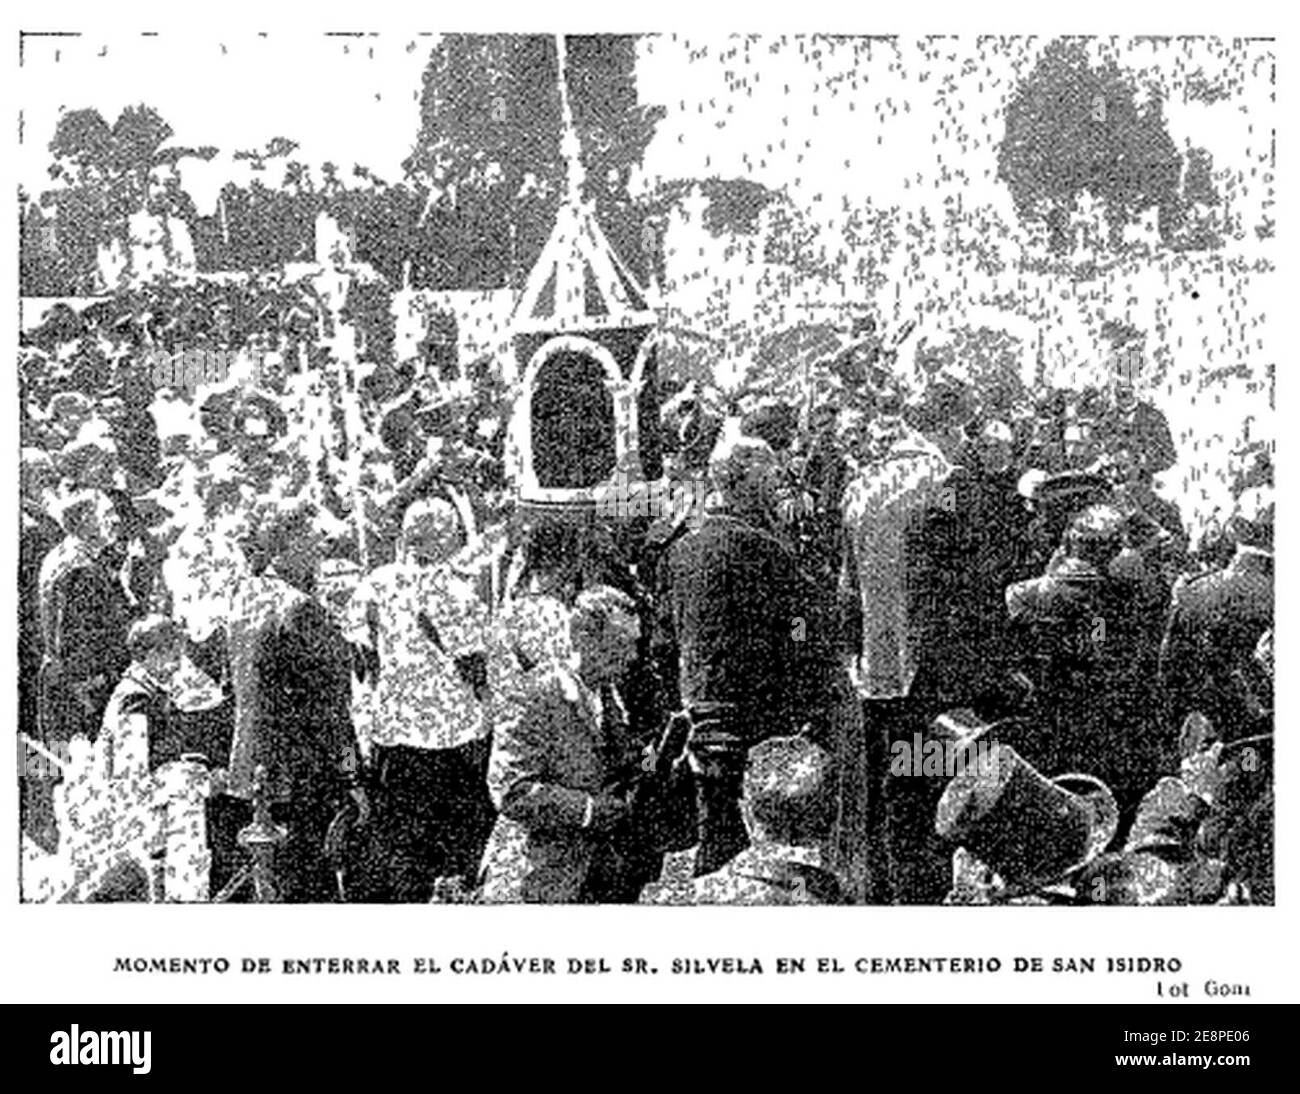 Momento de enterrar el cadáver del Sr. Silvela en el cementerio de San Isidro, foto de Goñi, ABC, 01-06-1905. Stockfoto